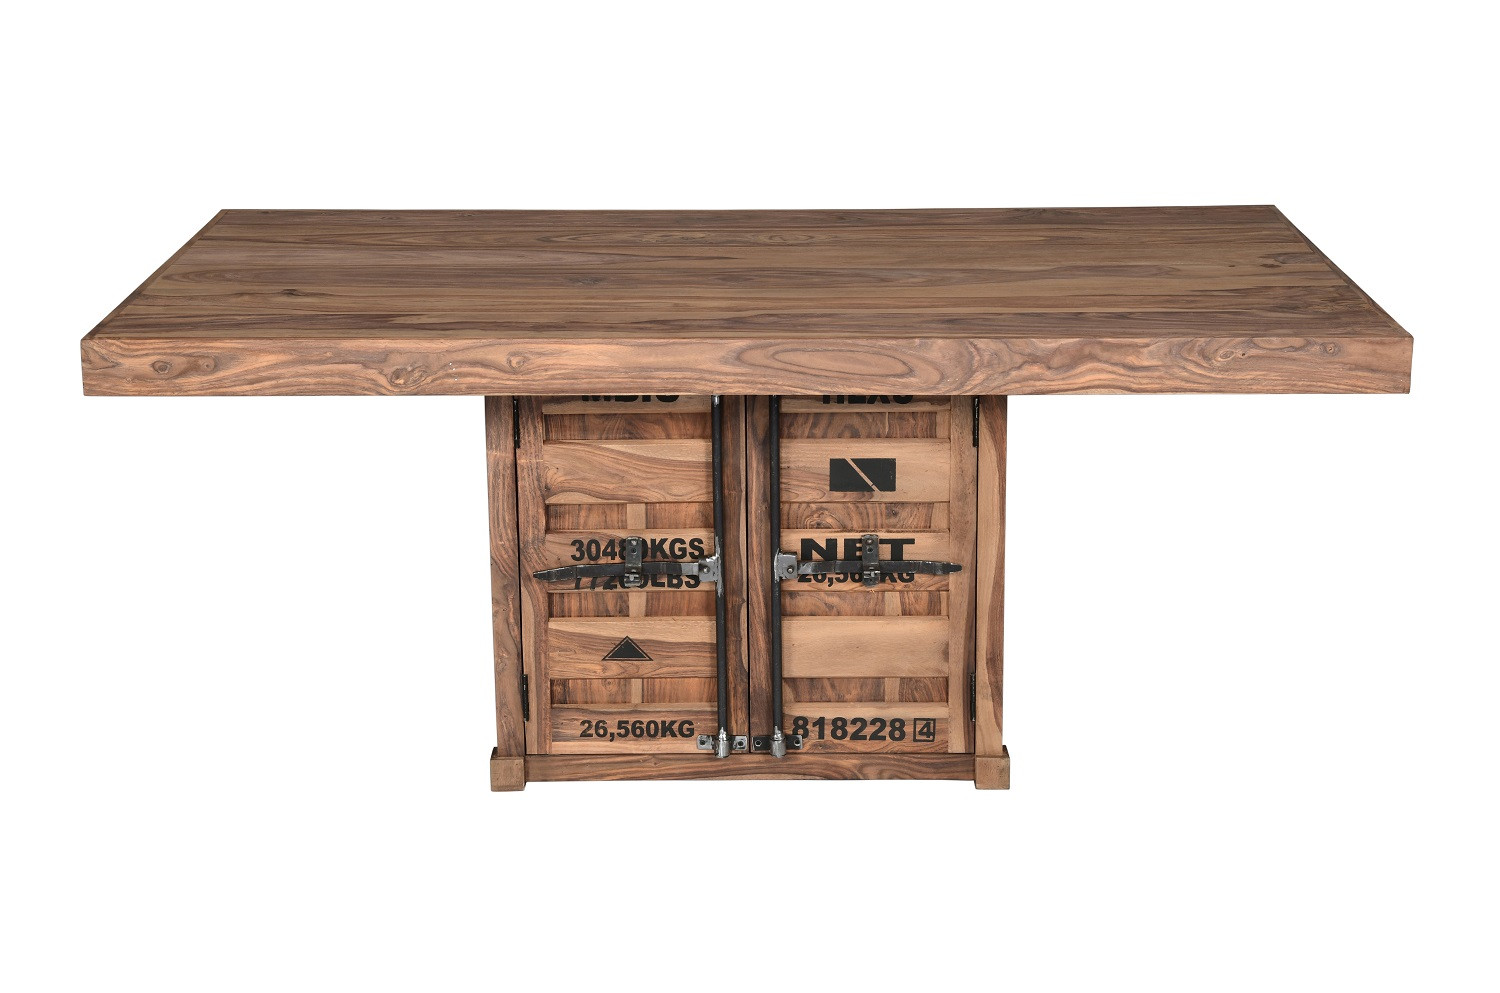 Dřevěný jídení stůl z masivu Aurora - VÝPRODEJ Aurora Jídelní stoly MH6924-KW